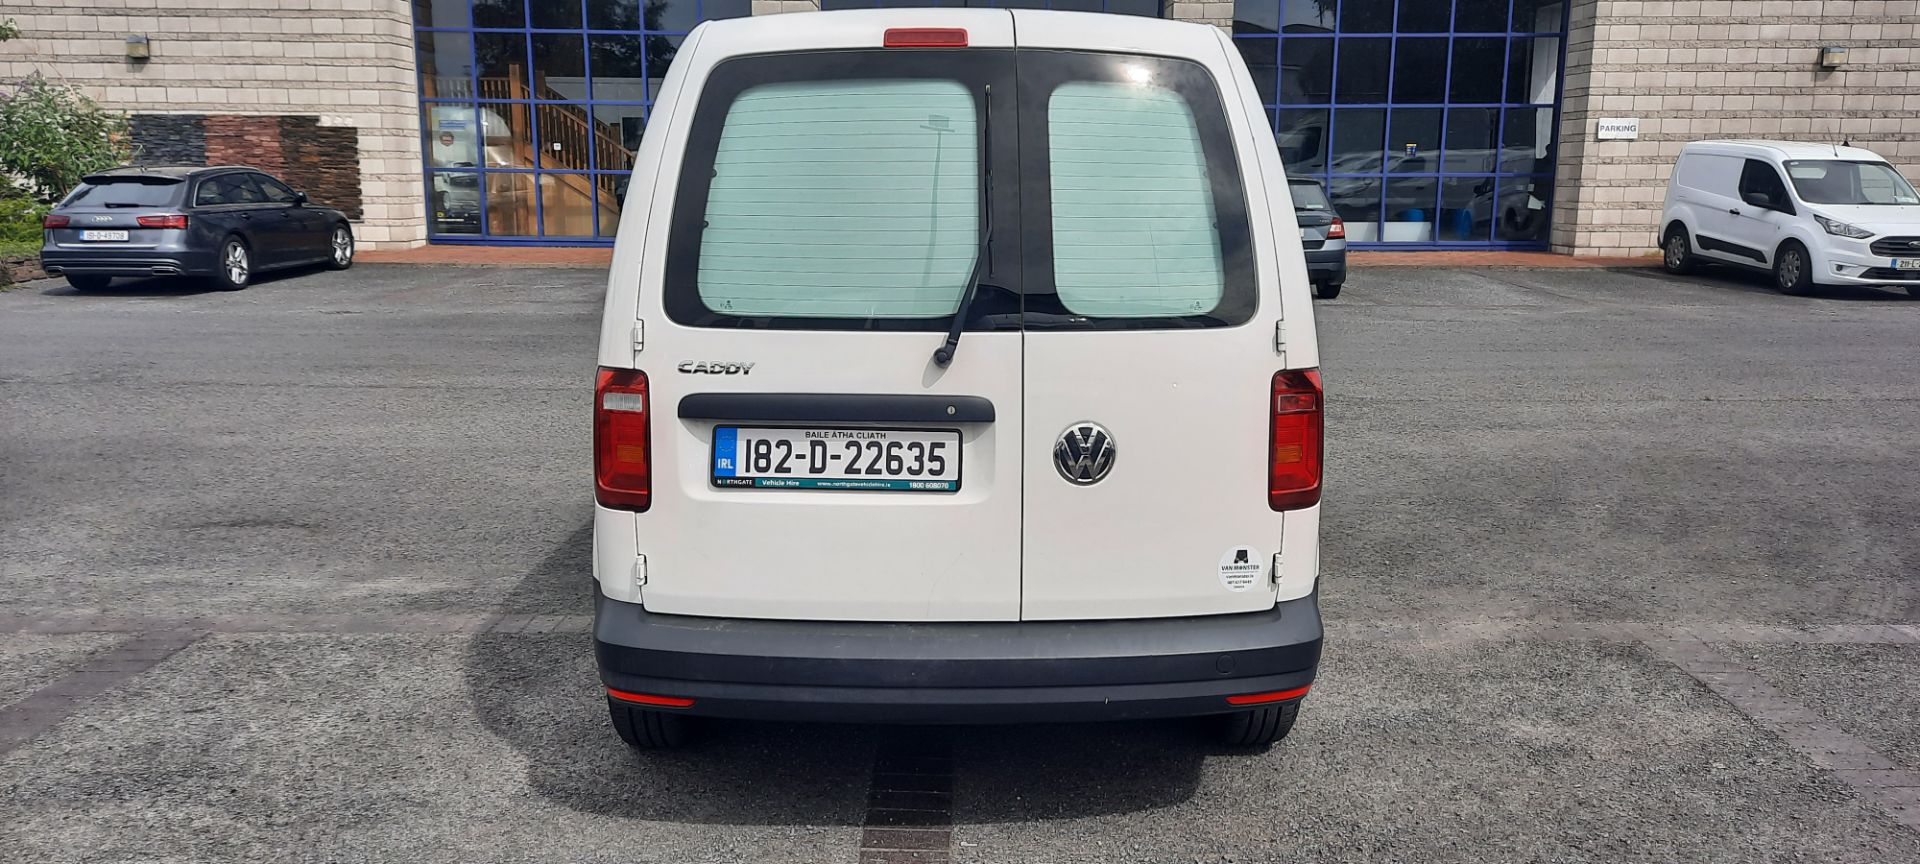 2018 Volkswagen Caddy C20 TDI STARTLINE (182D22635) Image 4